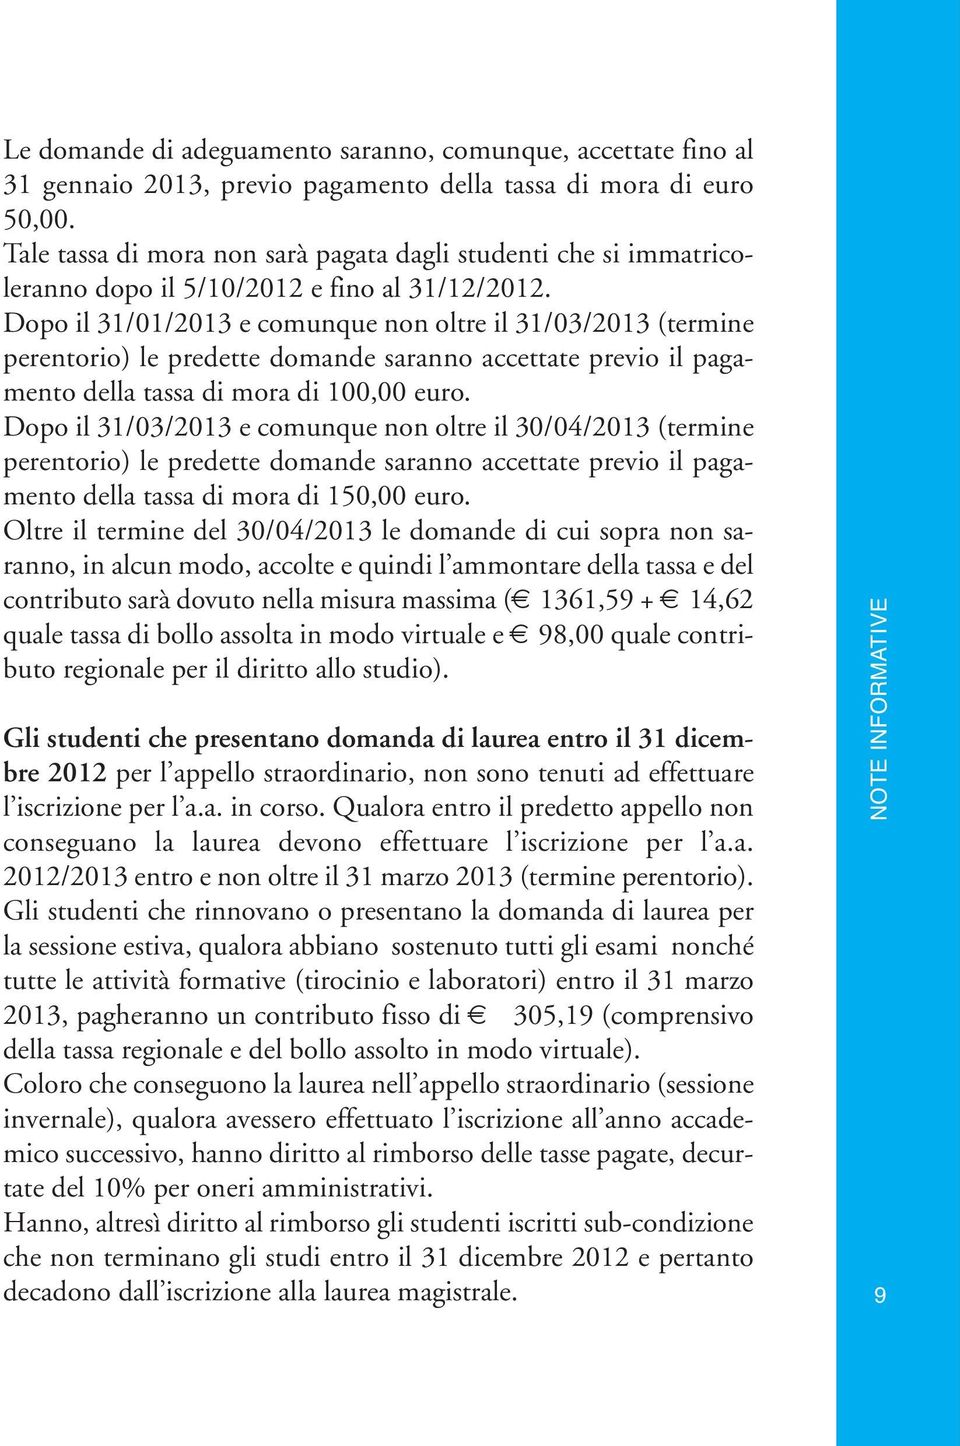 Dopo il 31/01/2013 e comunque non oltre il 31/03/2013 (termine perentorio) le predette domande saranno accettate previo il pagamento della tassa di mora di 100,00 euro.